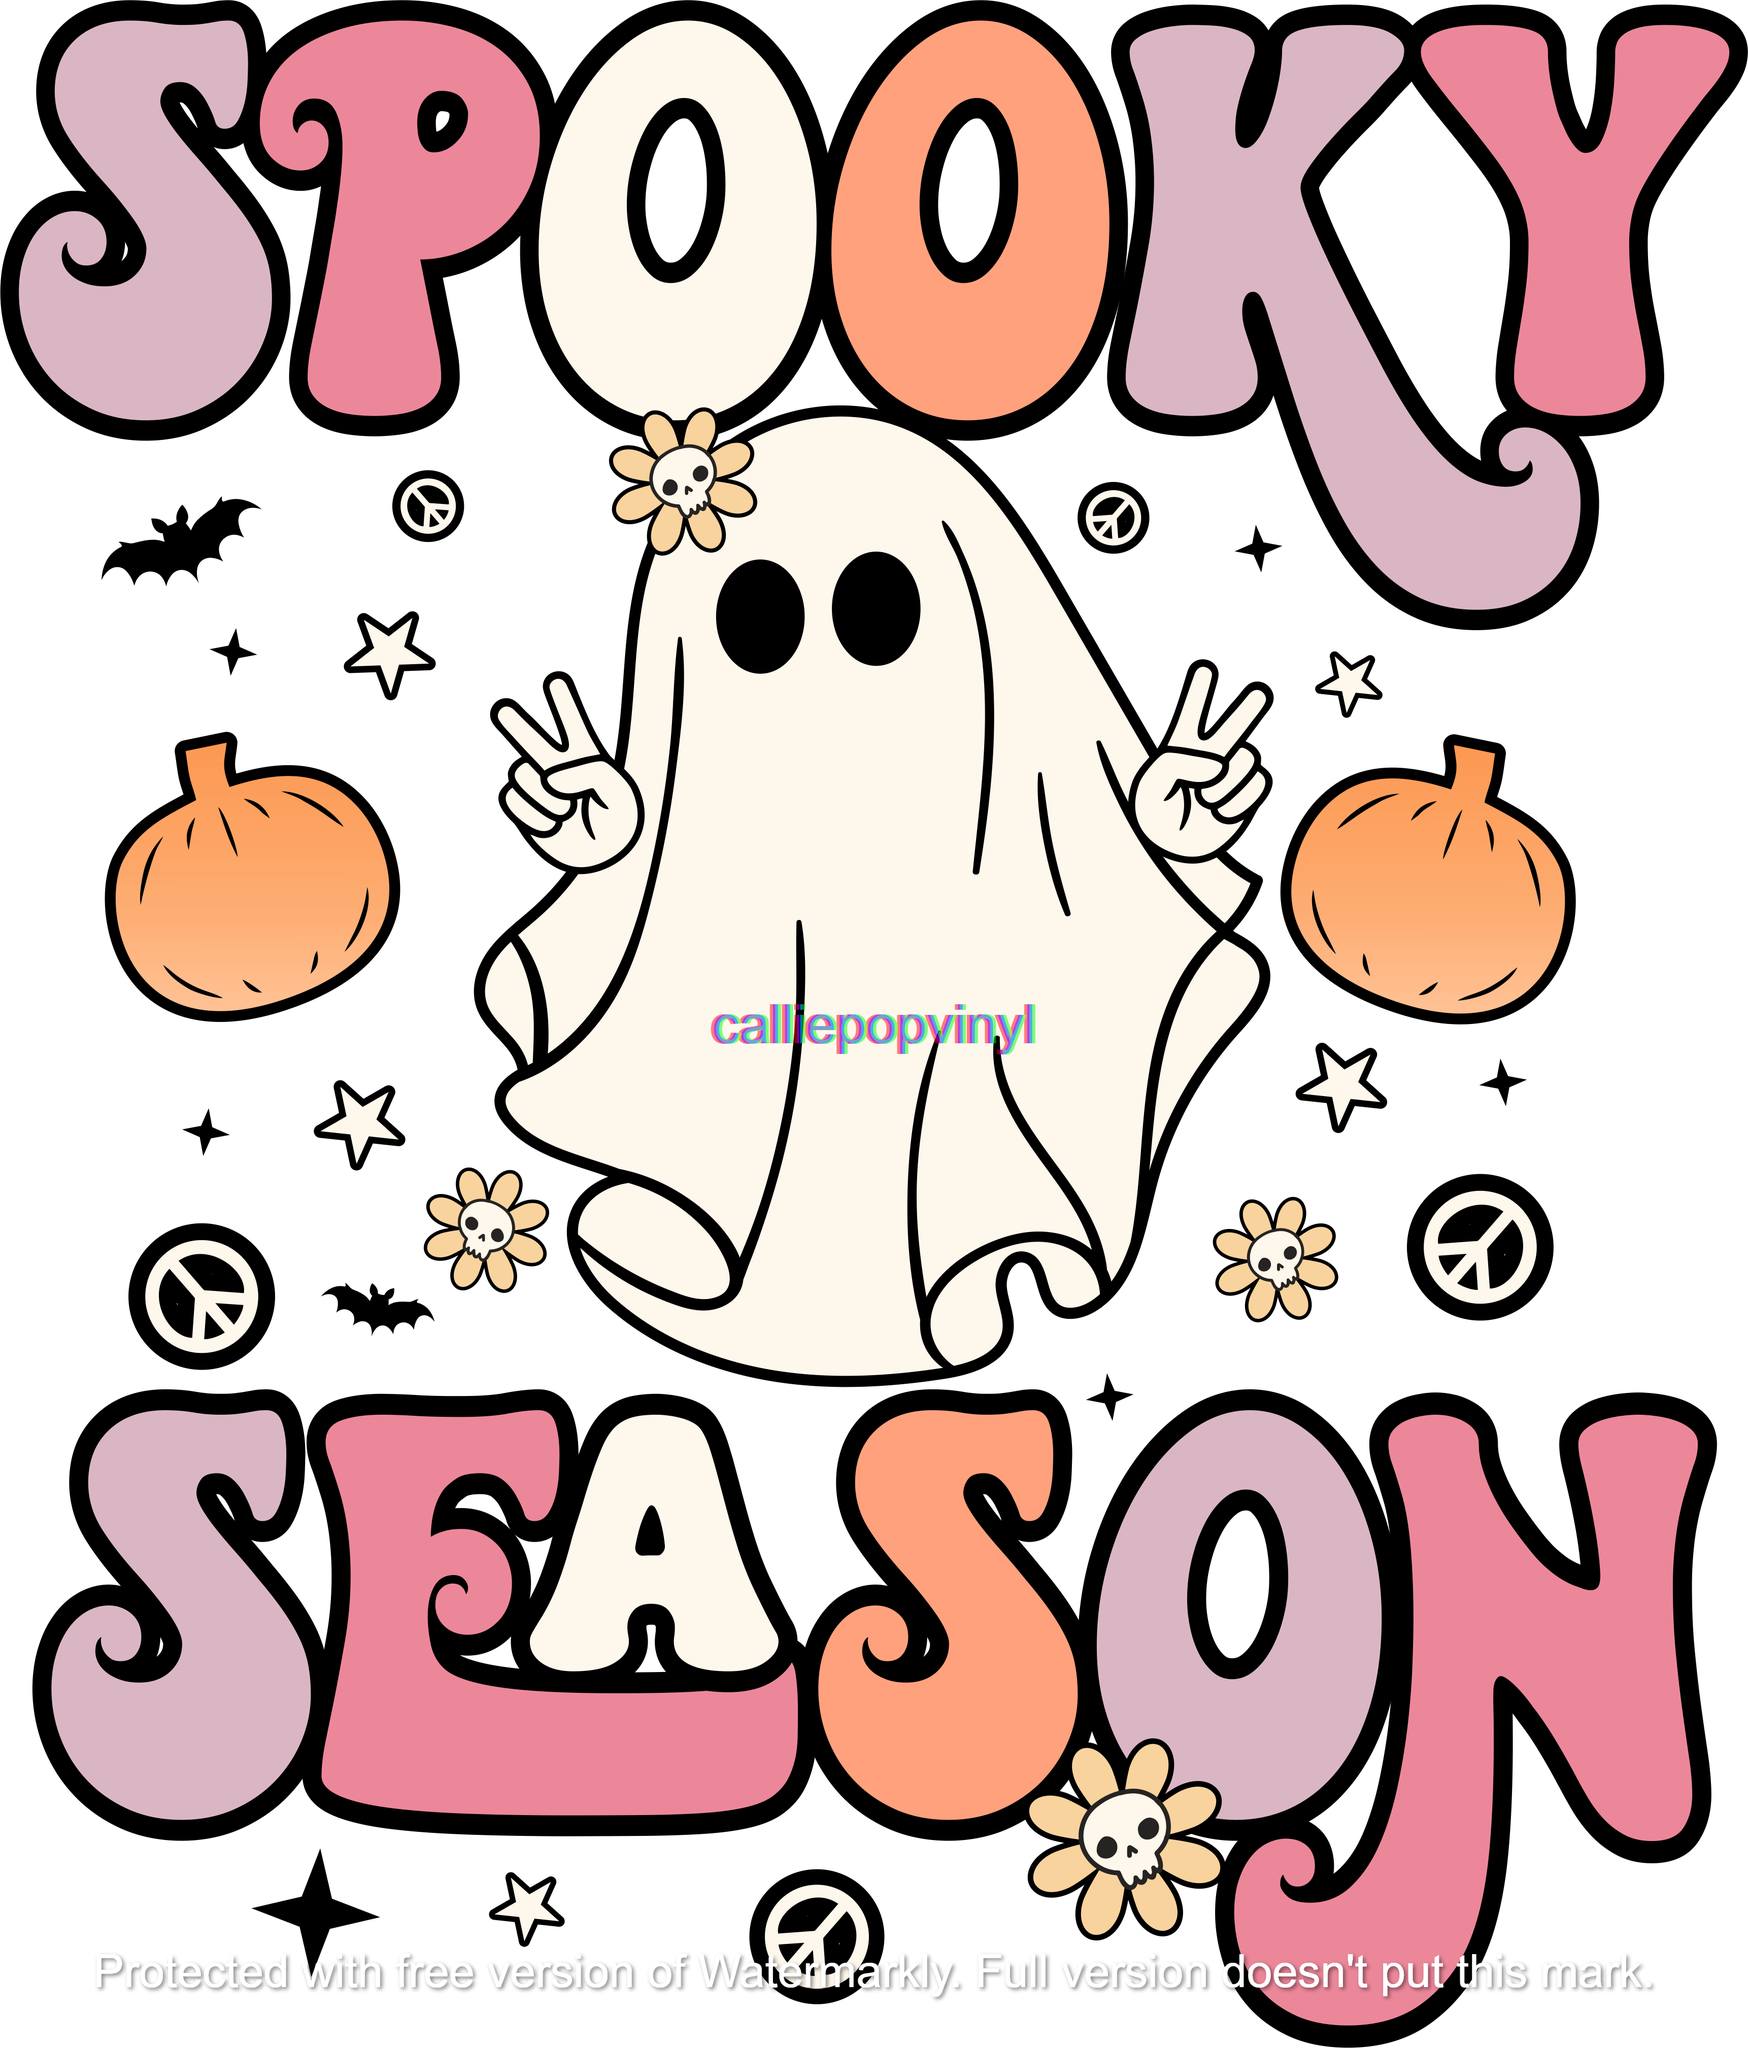 Retro Spooky Season Transfer Prints